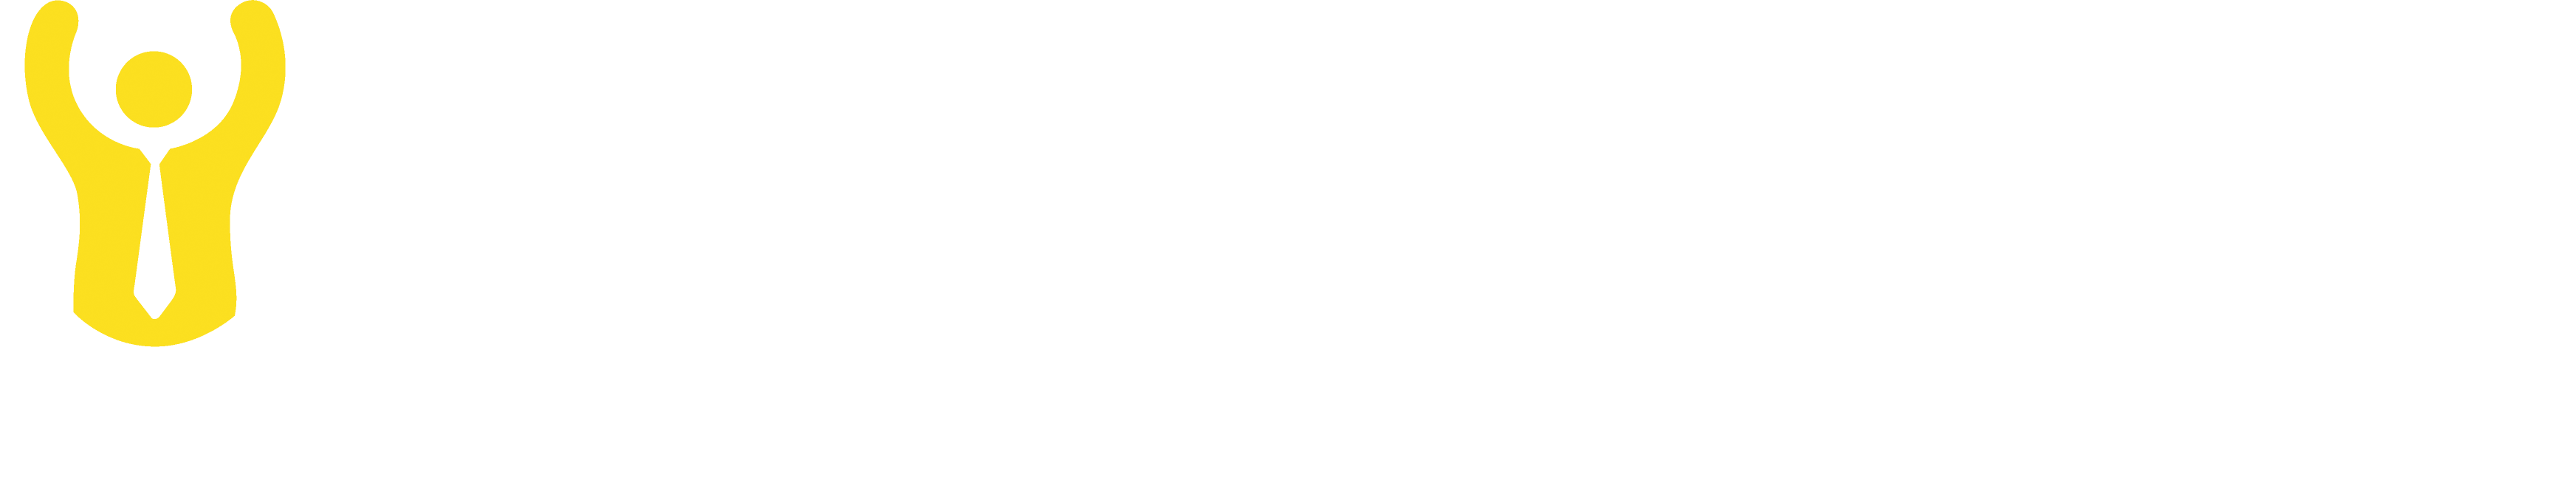 Whitewallbeirut-logo-fond-vert